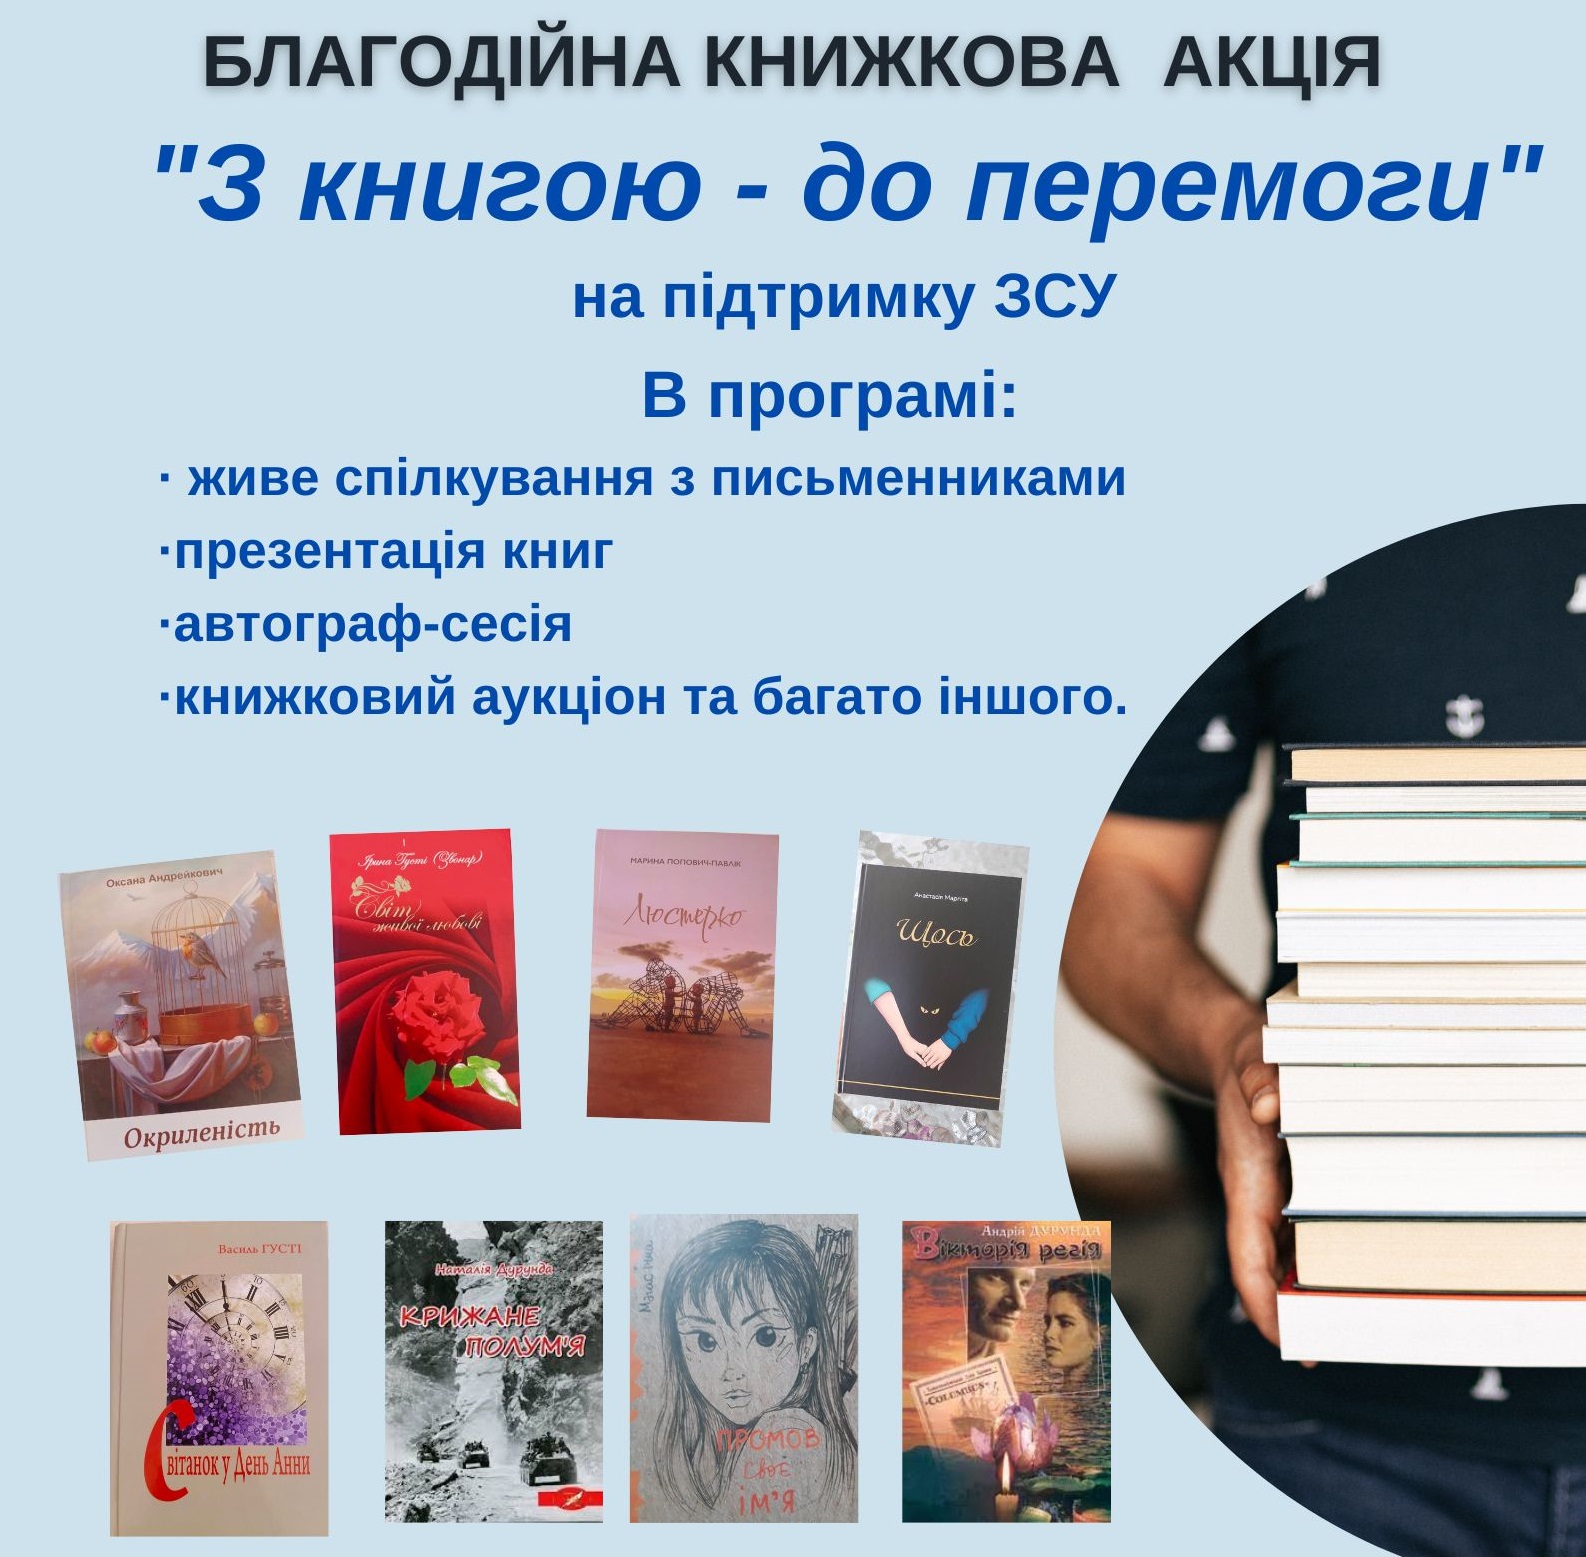 В Ужгороді відбудеться доброчинна книжкова акція "З книгою до перемоги"